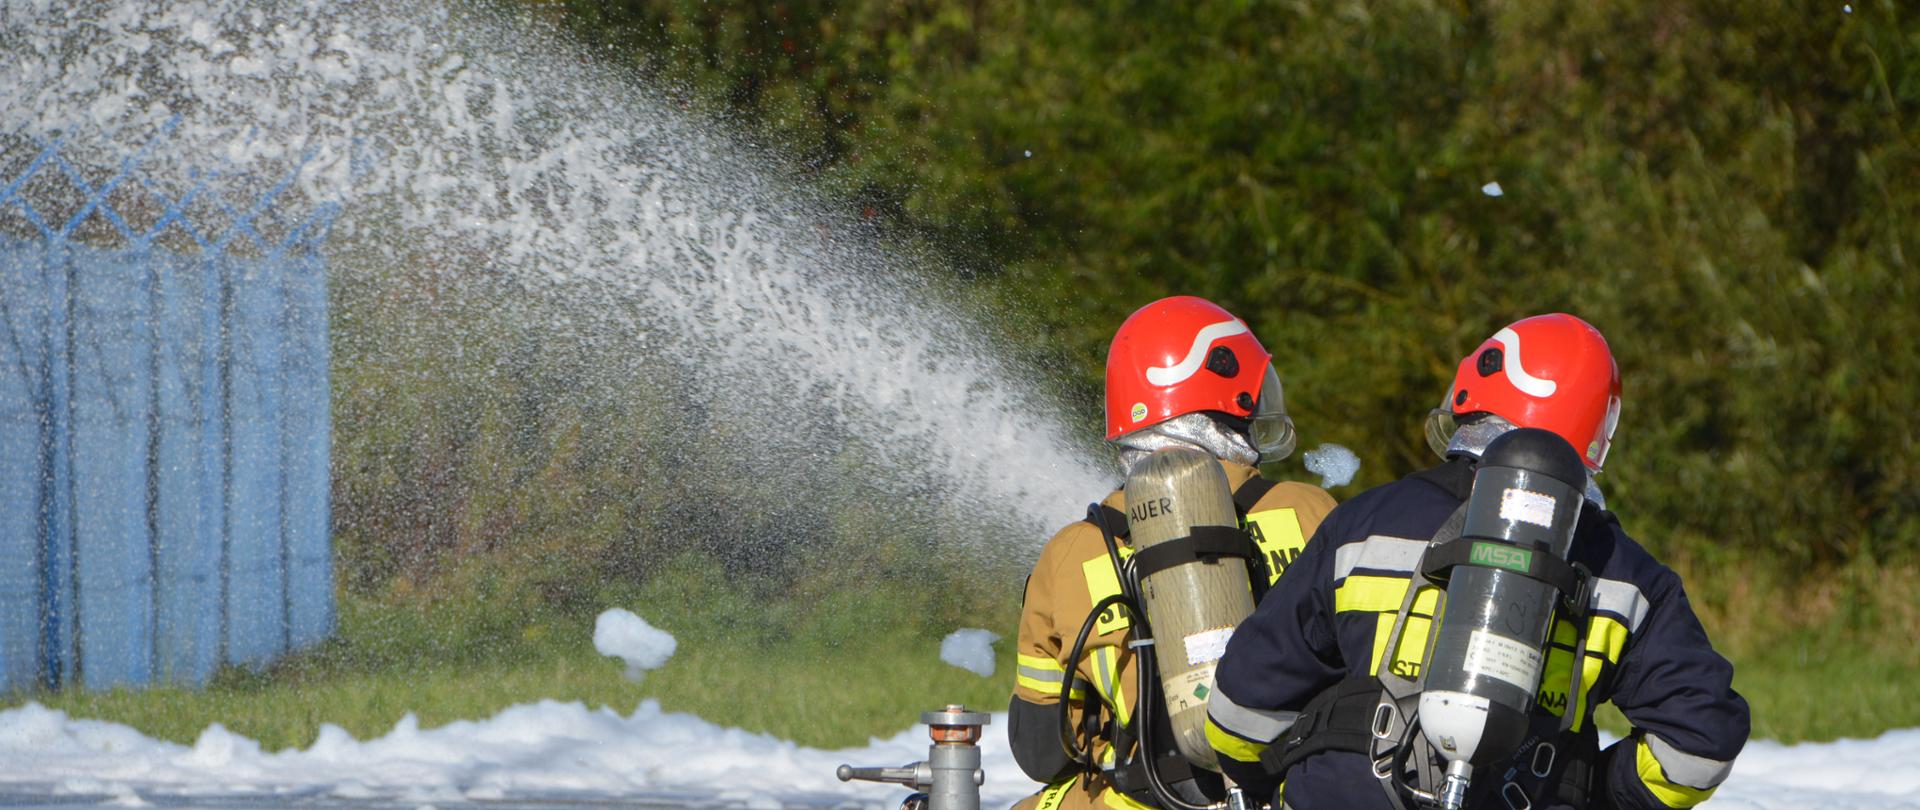 Fotografia przedstawia strażaków podających pianę na pożar podczas ćwiczeń.